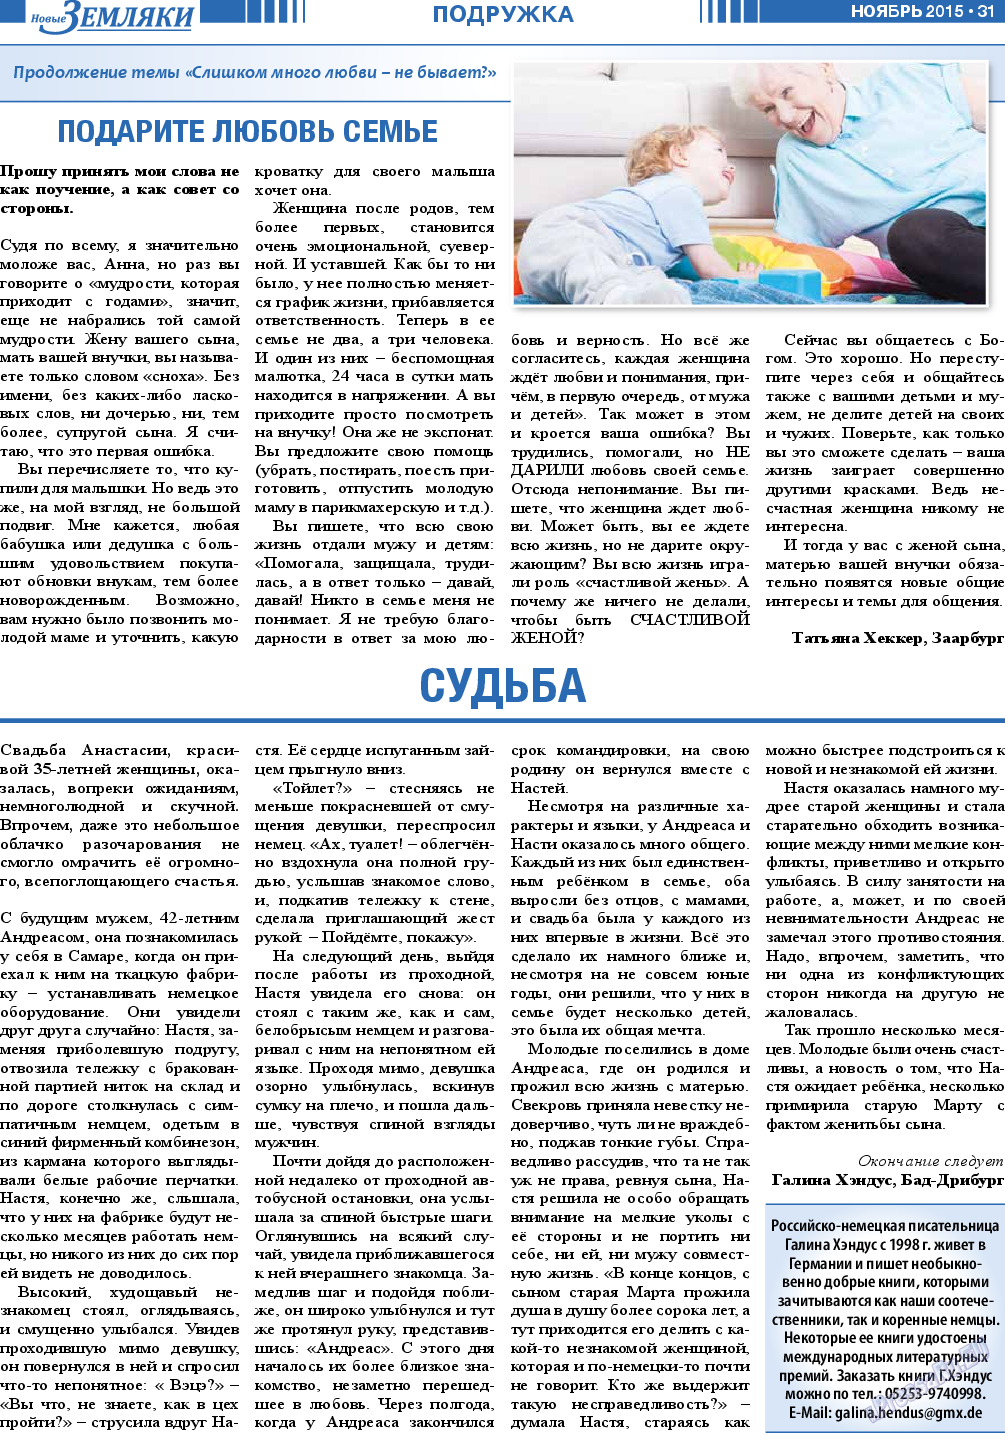 Новые Земляки, газета. 2015 №11 стр.31